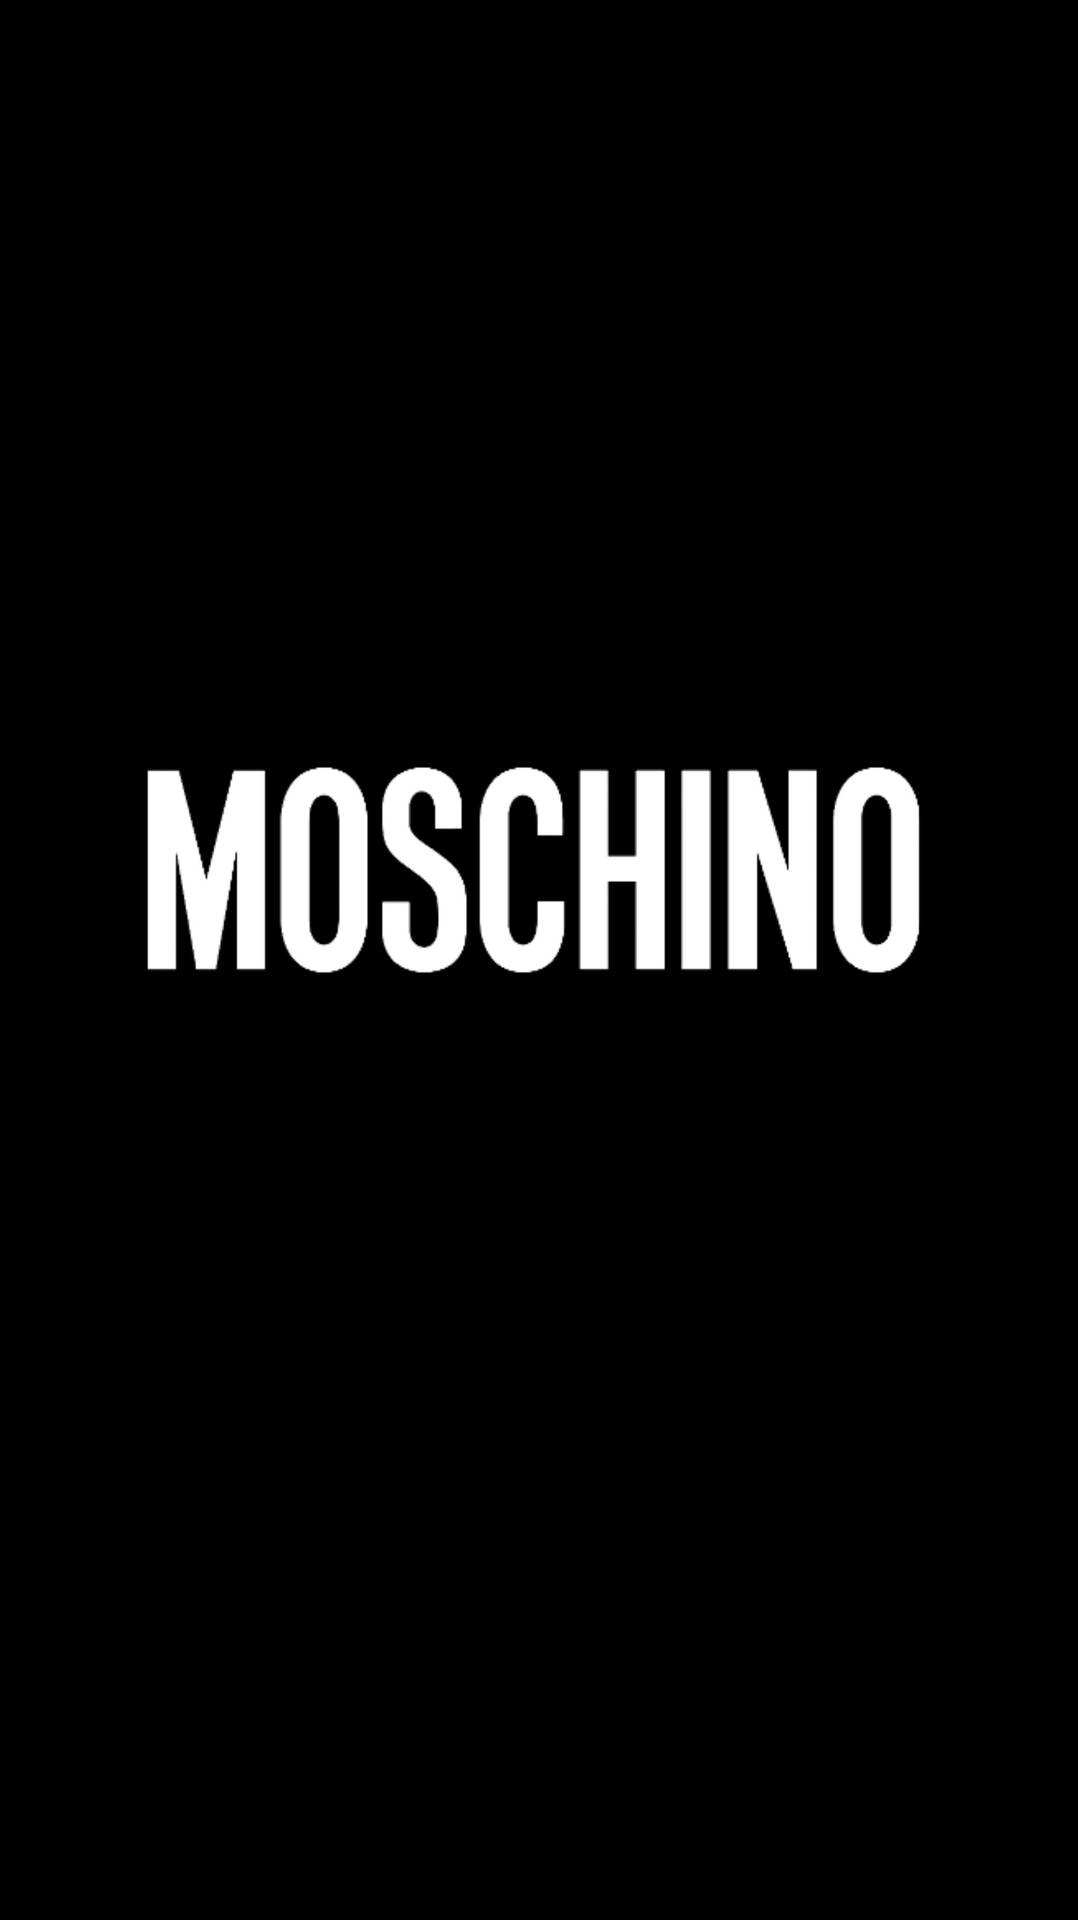 Black And White Moschino Background